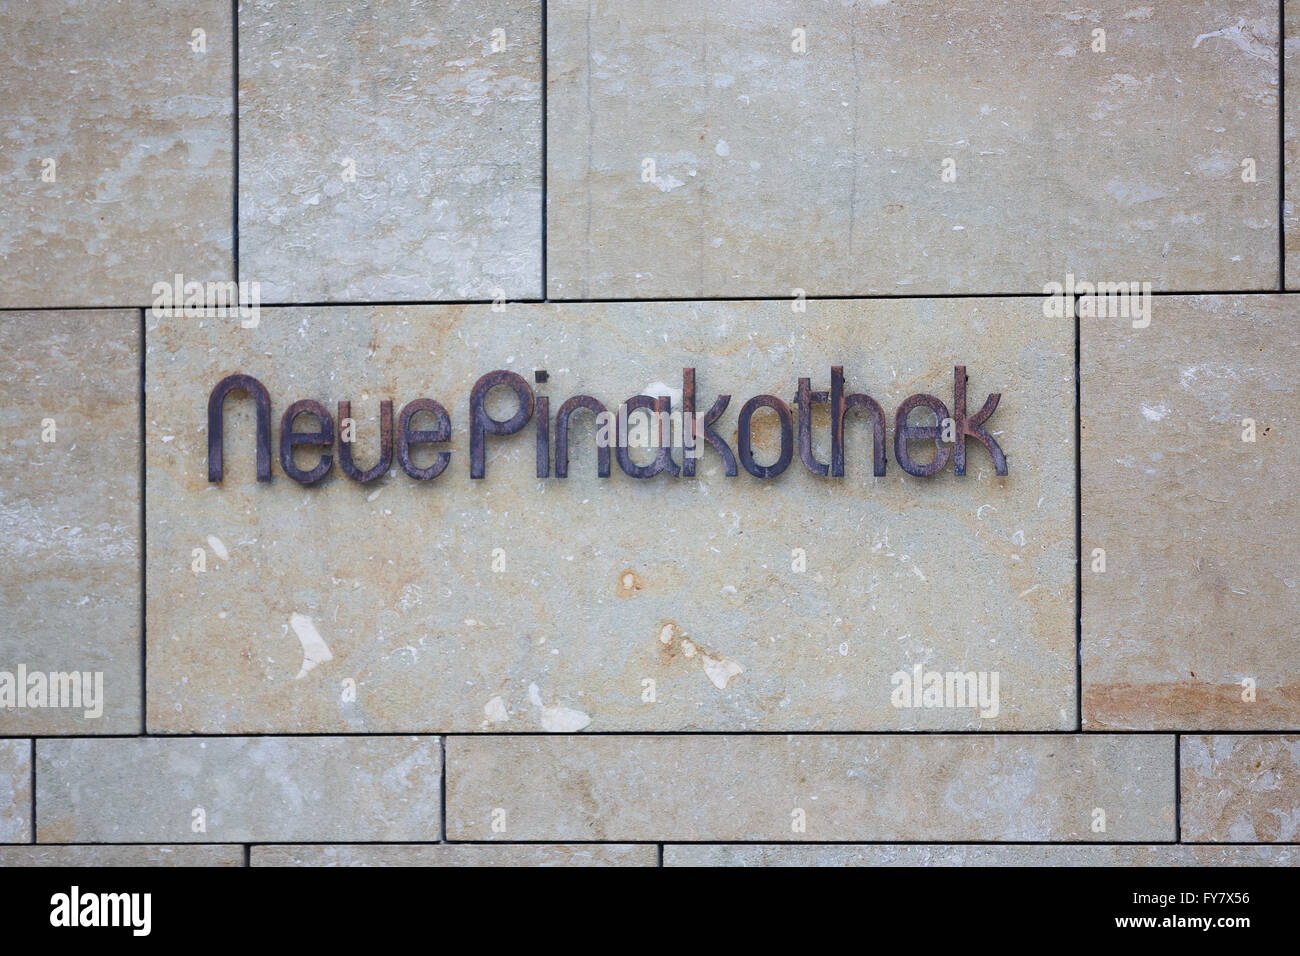 Inscrivez-vous sur le mur de nouveau Pinakothek musée, situé dans le centre de Munich, Allemagne Banque D'Images